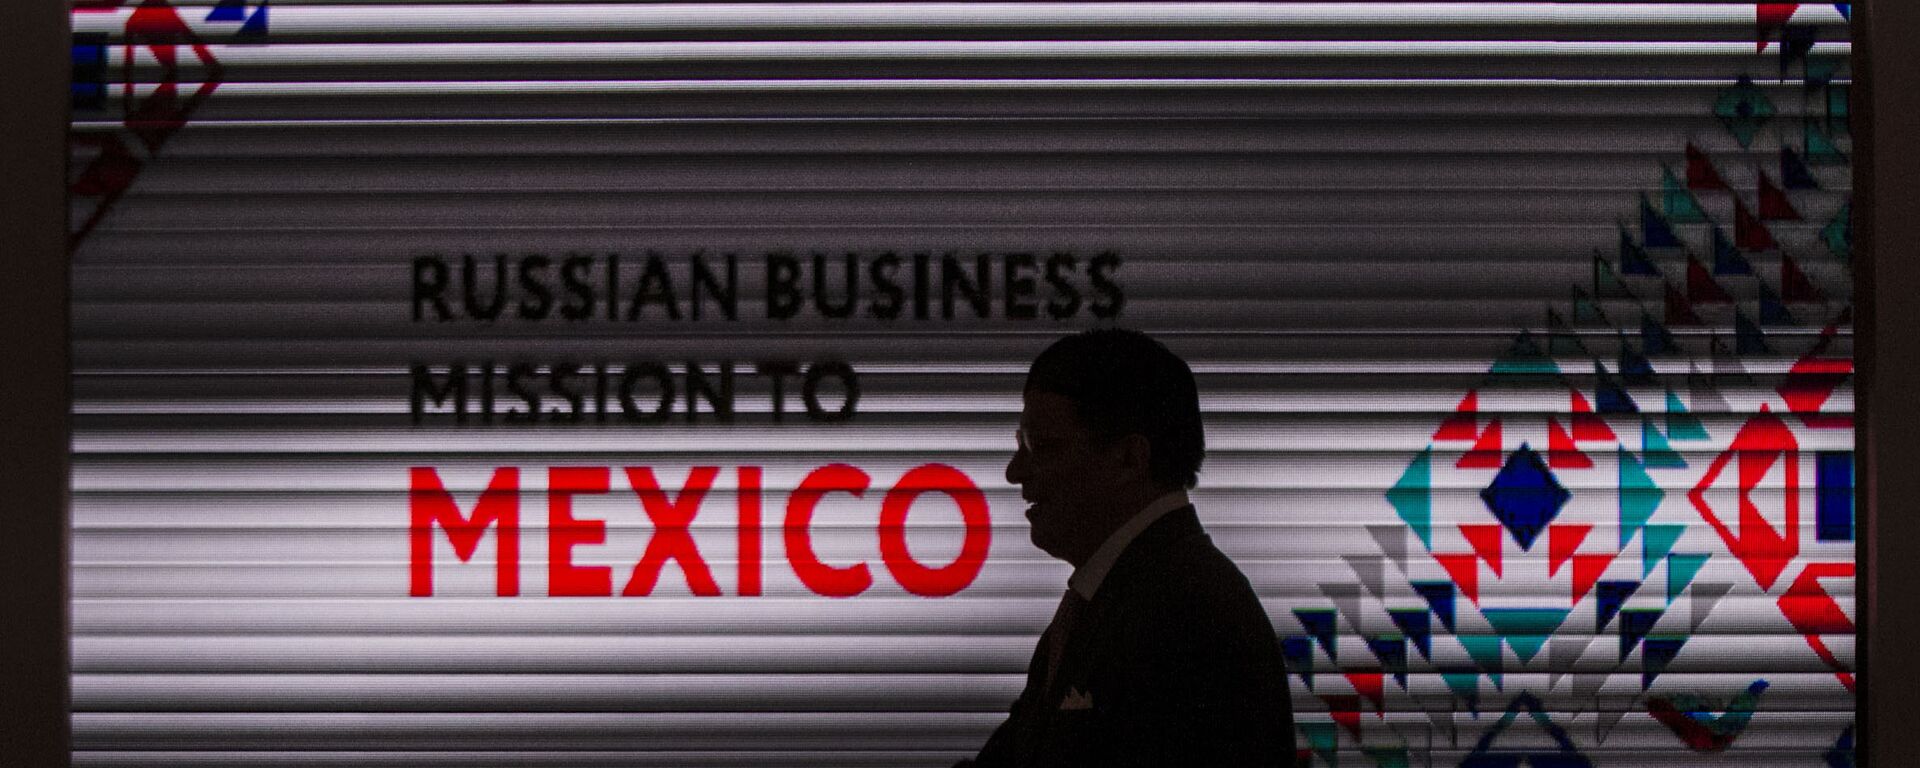 Participante de la misión empresarial en México del Centro Ruso de Exportaciones - Sputnik Mundo, 1920, 17.10.2018